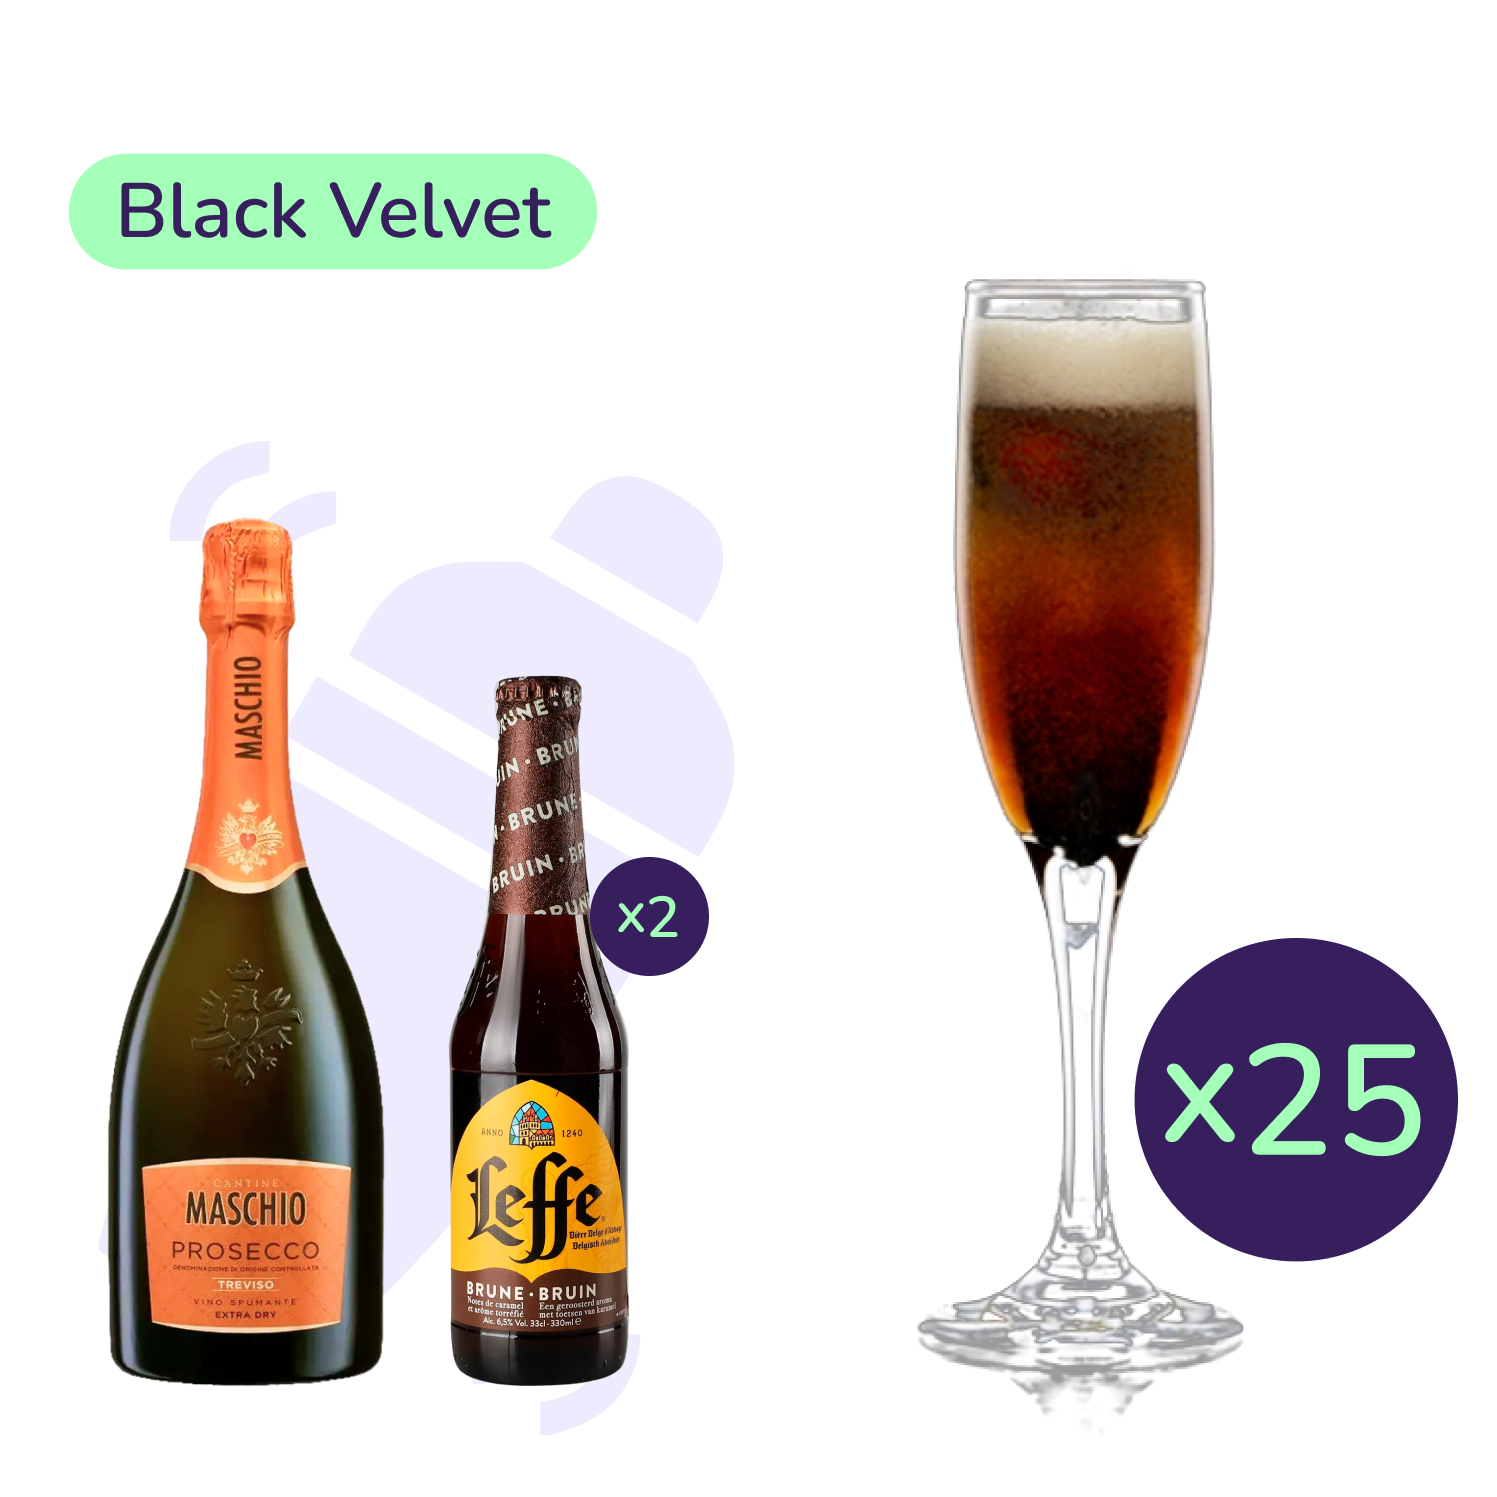 Коктейль Black Velvet (набор ингредиентов) х25 на основе Maschio Prosecco Treviso - фото 1